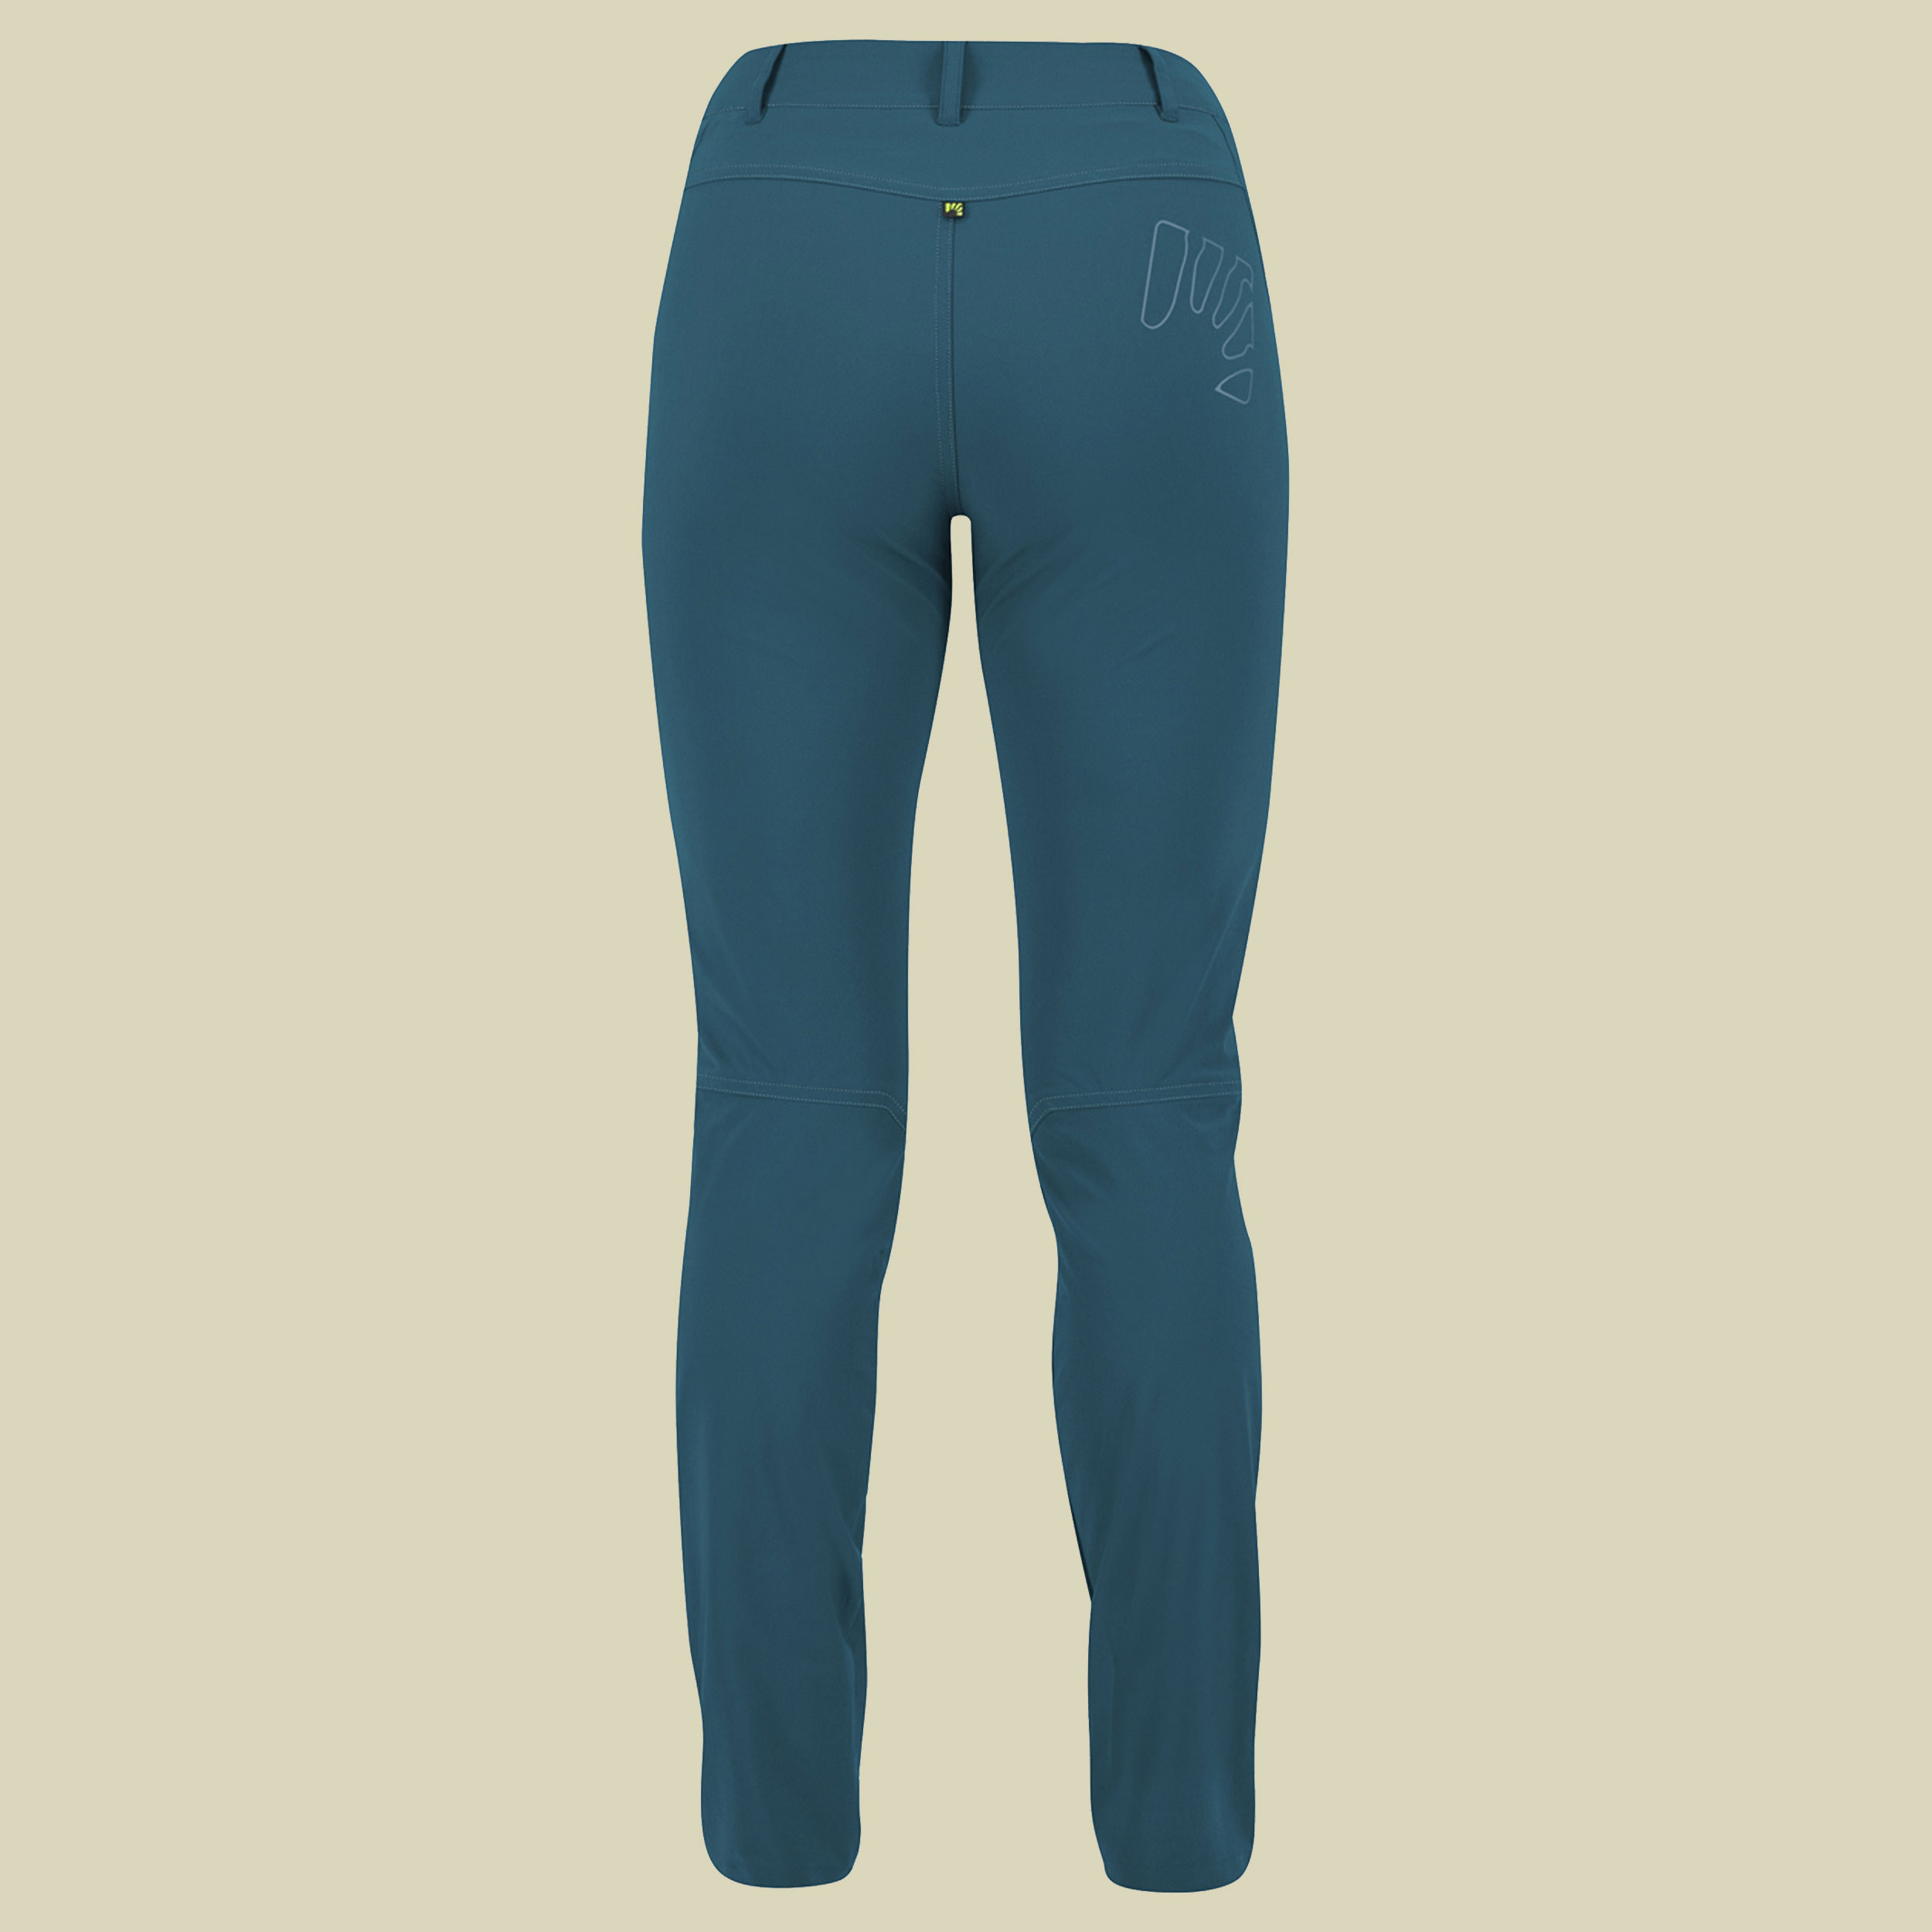 Fantasia Evo Pant Women Größe 34 (40 Herstellergr.) Farbe corsair/adriatic blue